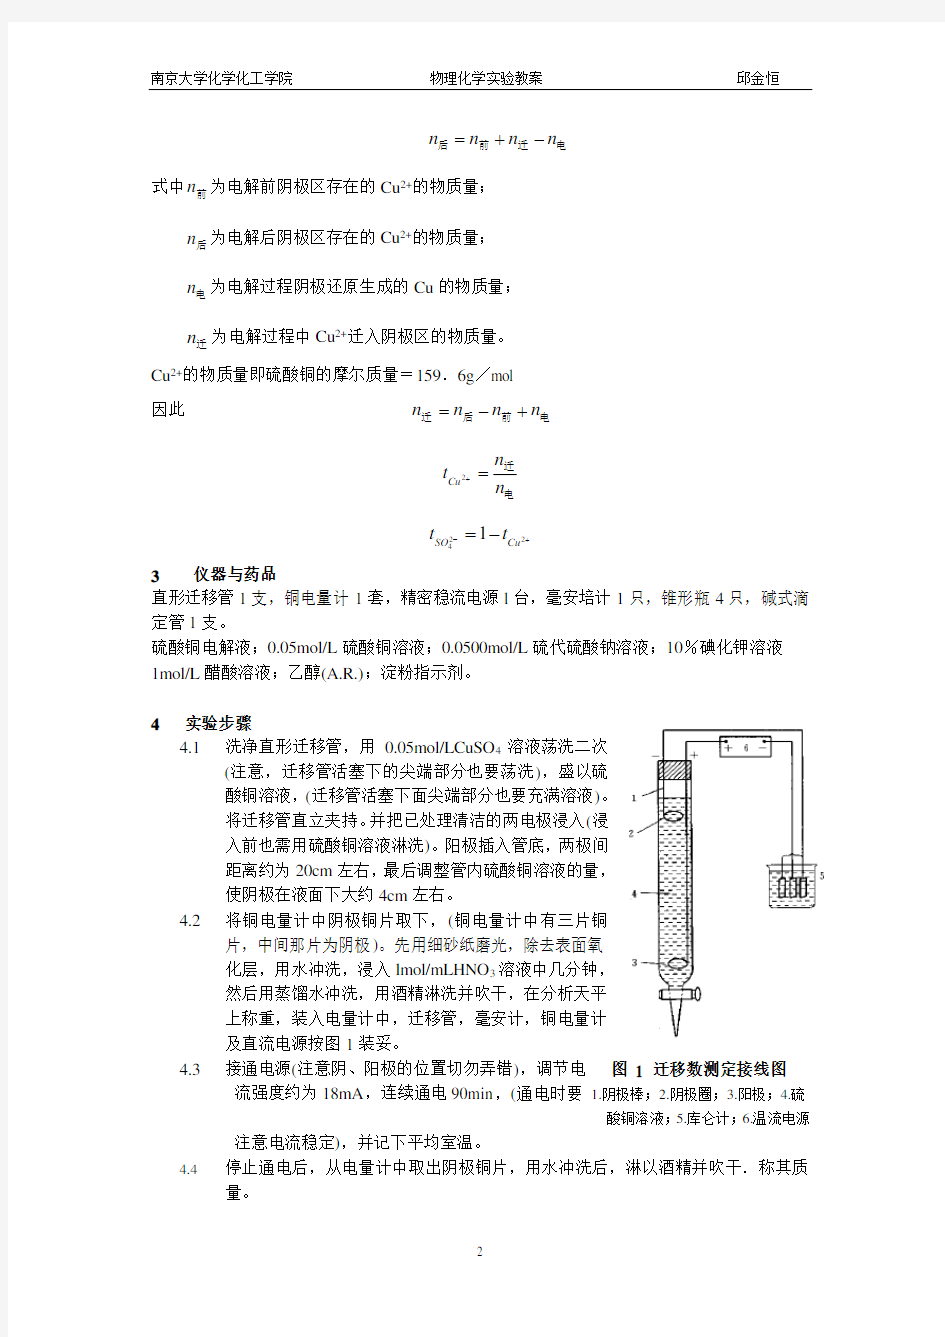 南京大学物化实验系列离子迁移数的测定